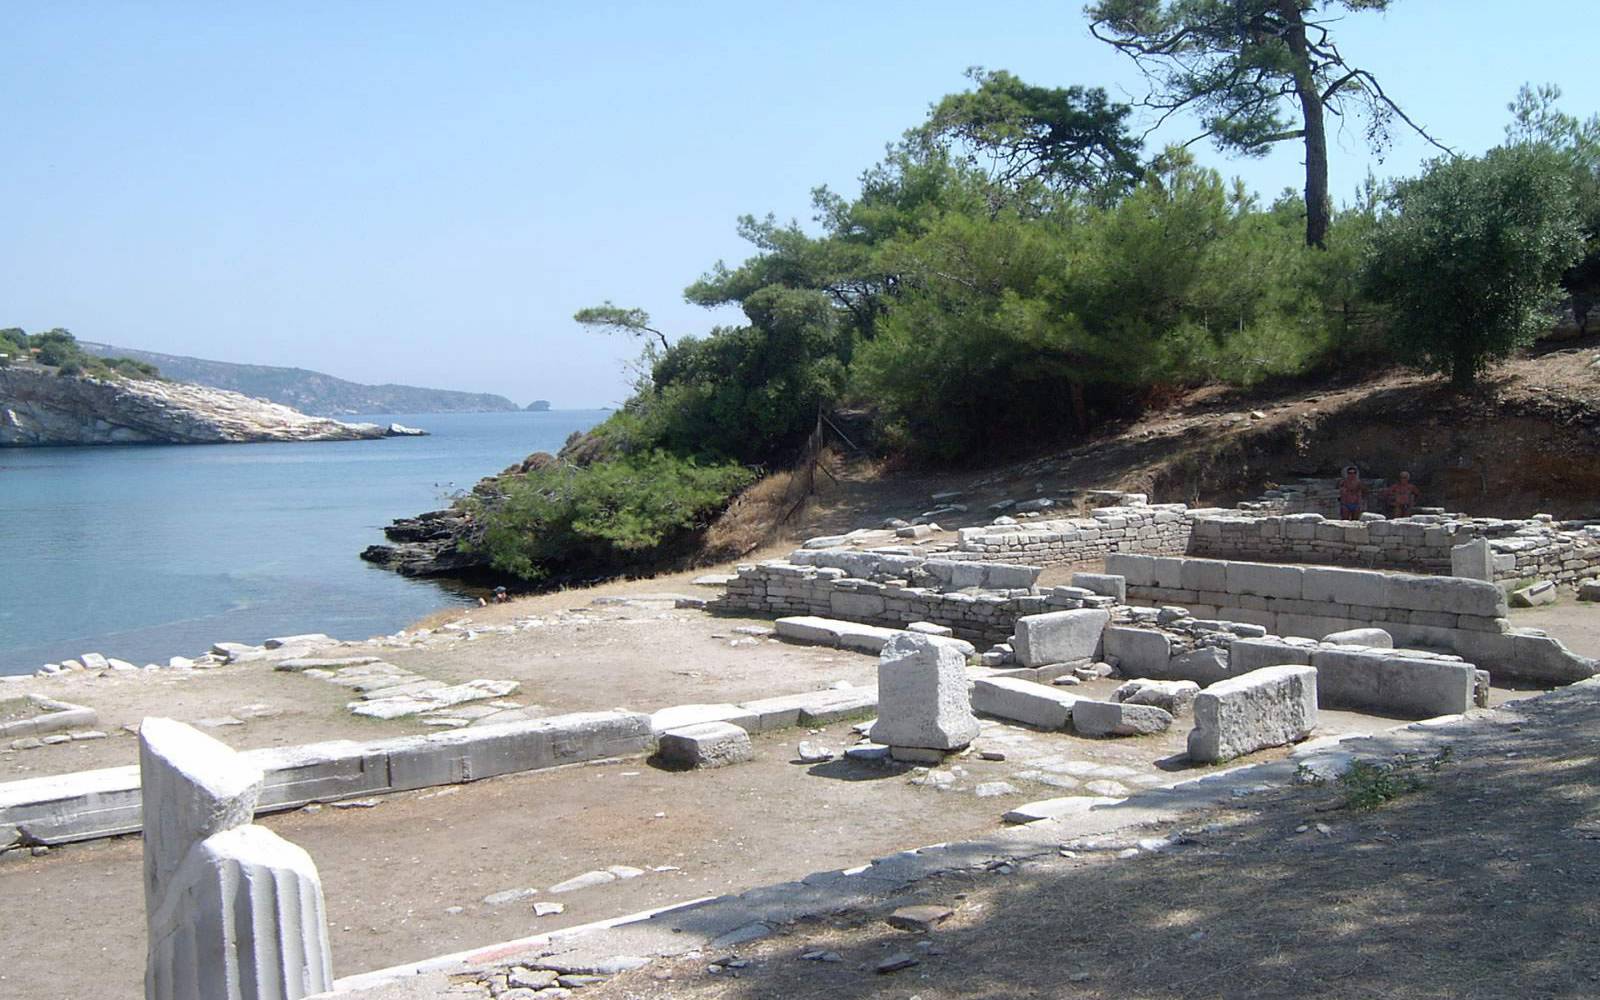 Sanctuary zum Dioskouri gewidmet